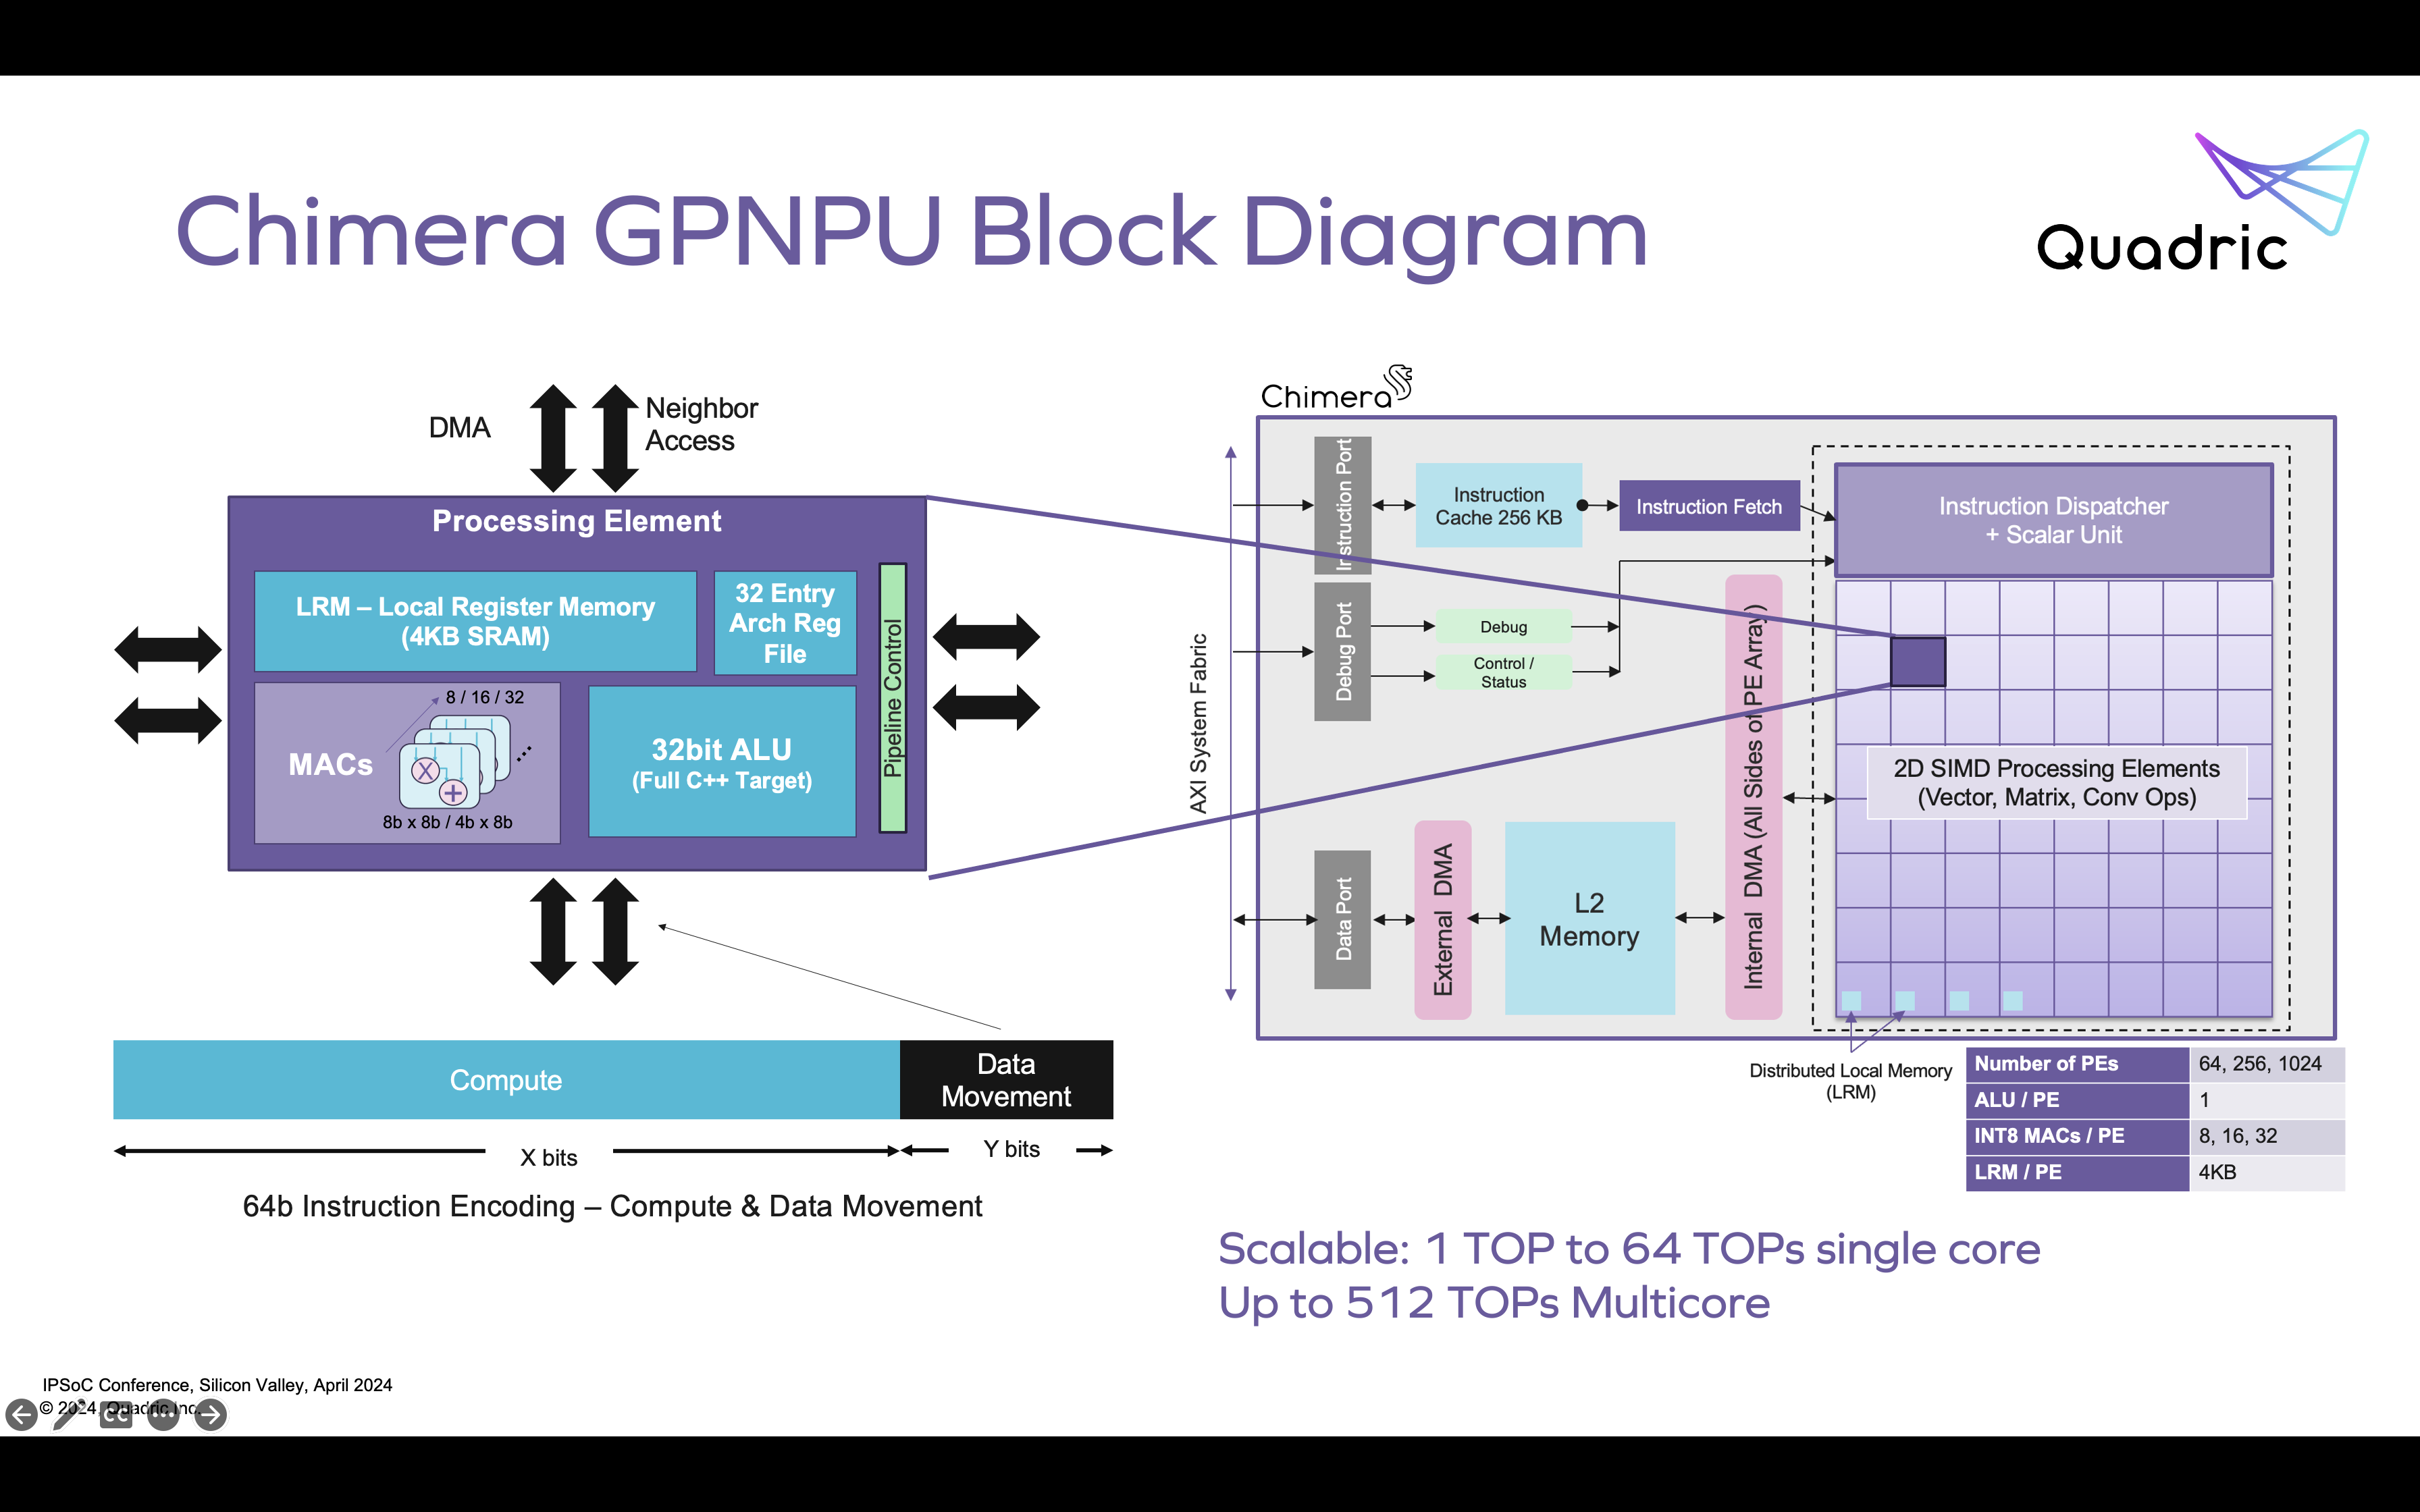 Chimera GPNPU Block Diagram